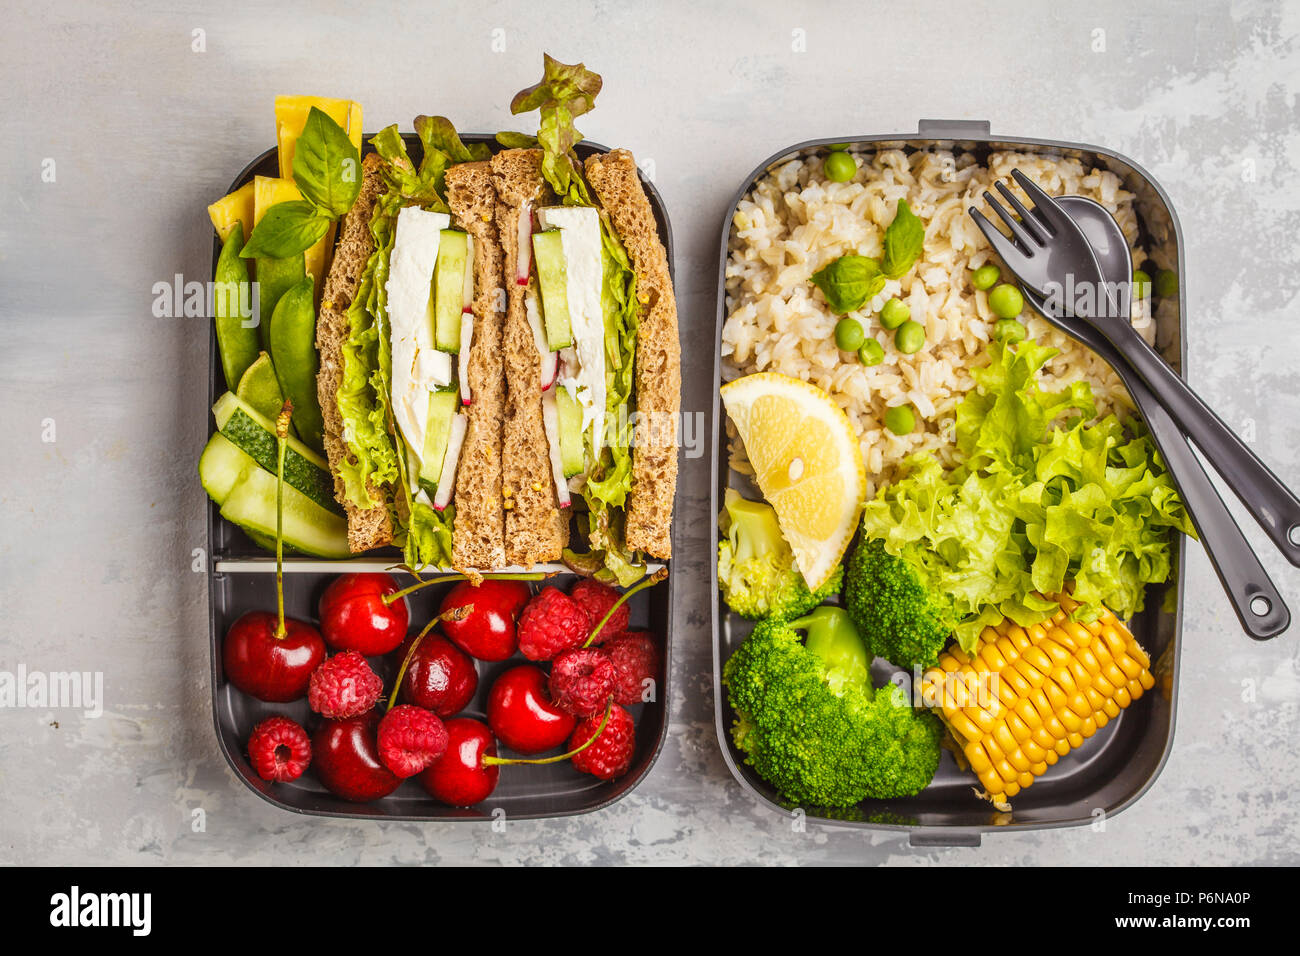 Préparation des repas sains avec des contenants sandwich feta avec fruits, baies, légumes et riz. Concept alimentaire végétarien sain. La nourriture à emporter. Banque D'Images